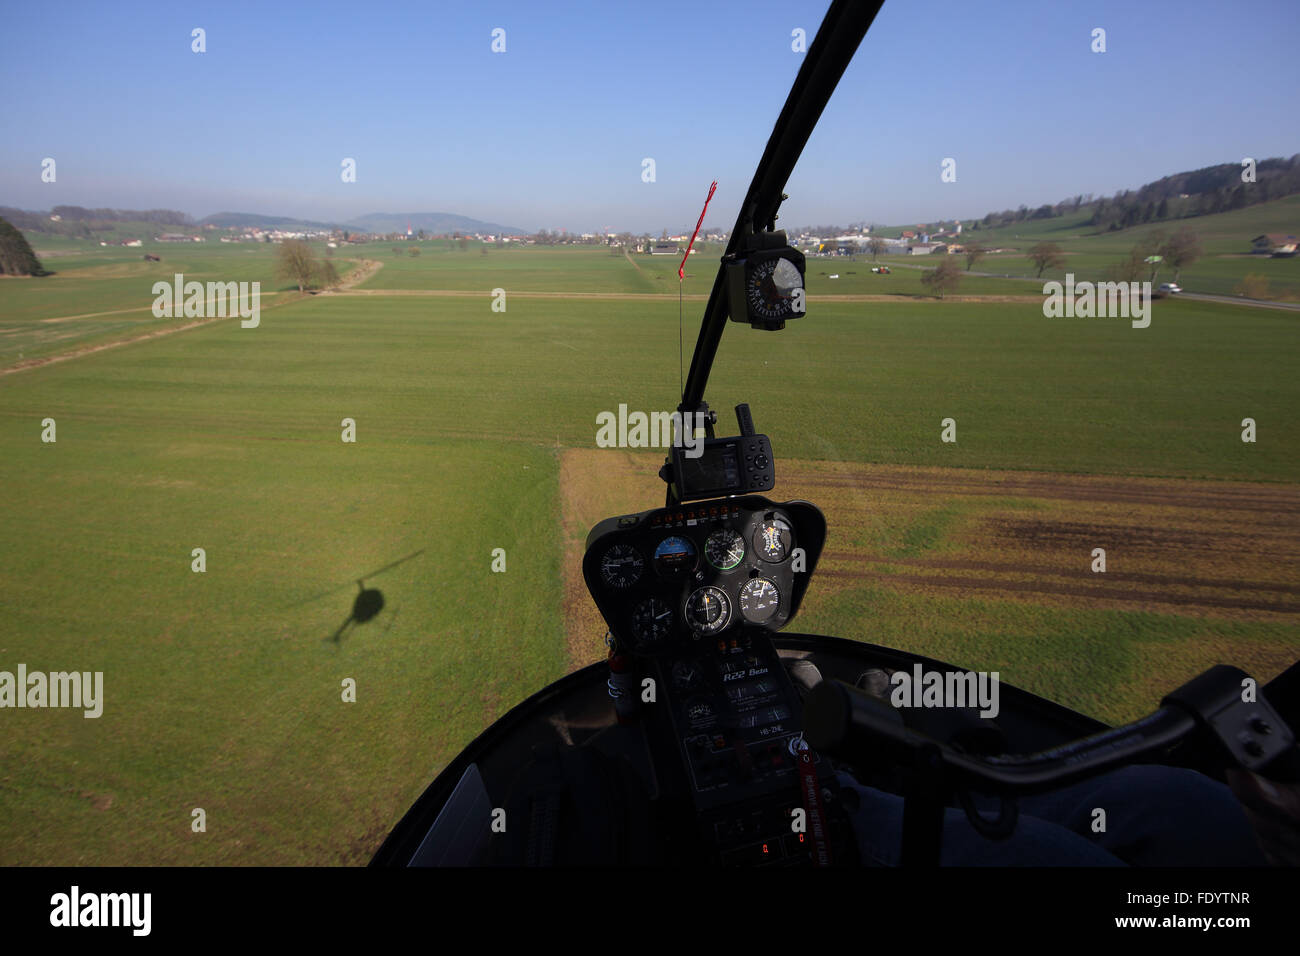 Beromuenster, Schweiz, Blick aus dem Cockpit eines Hubschraubers während des Fluges Stockfoto